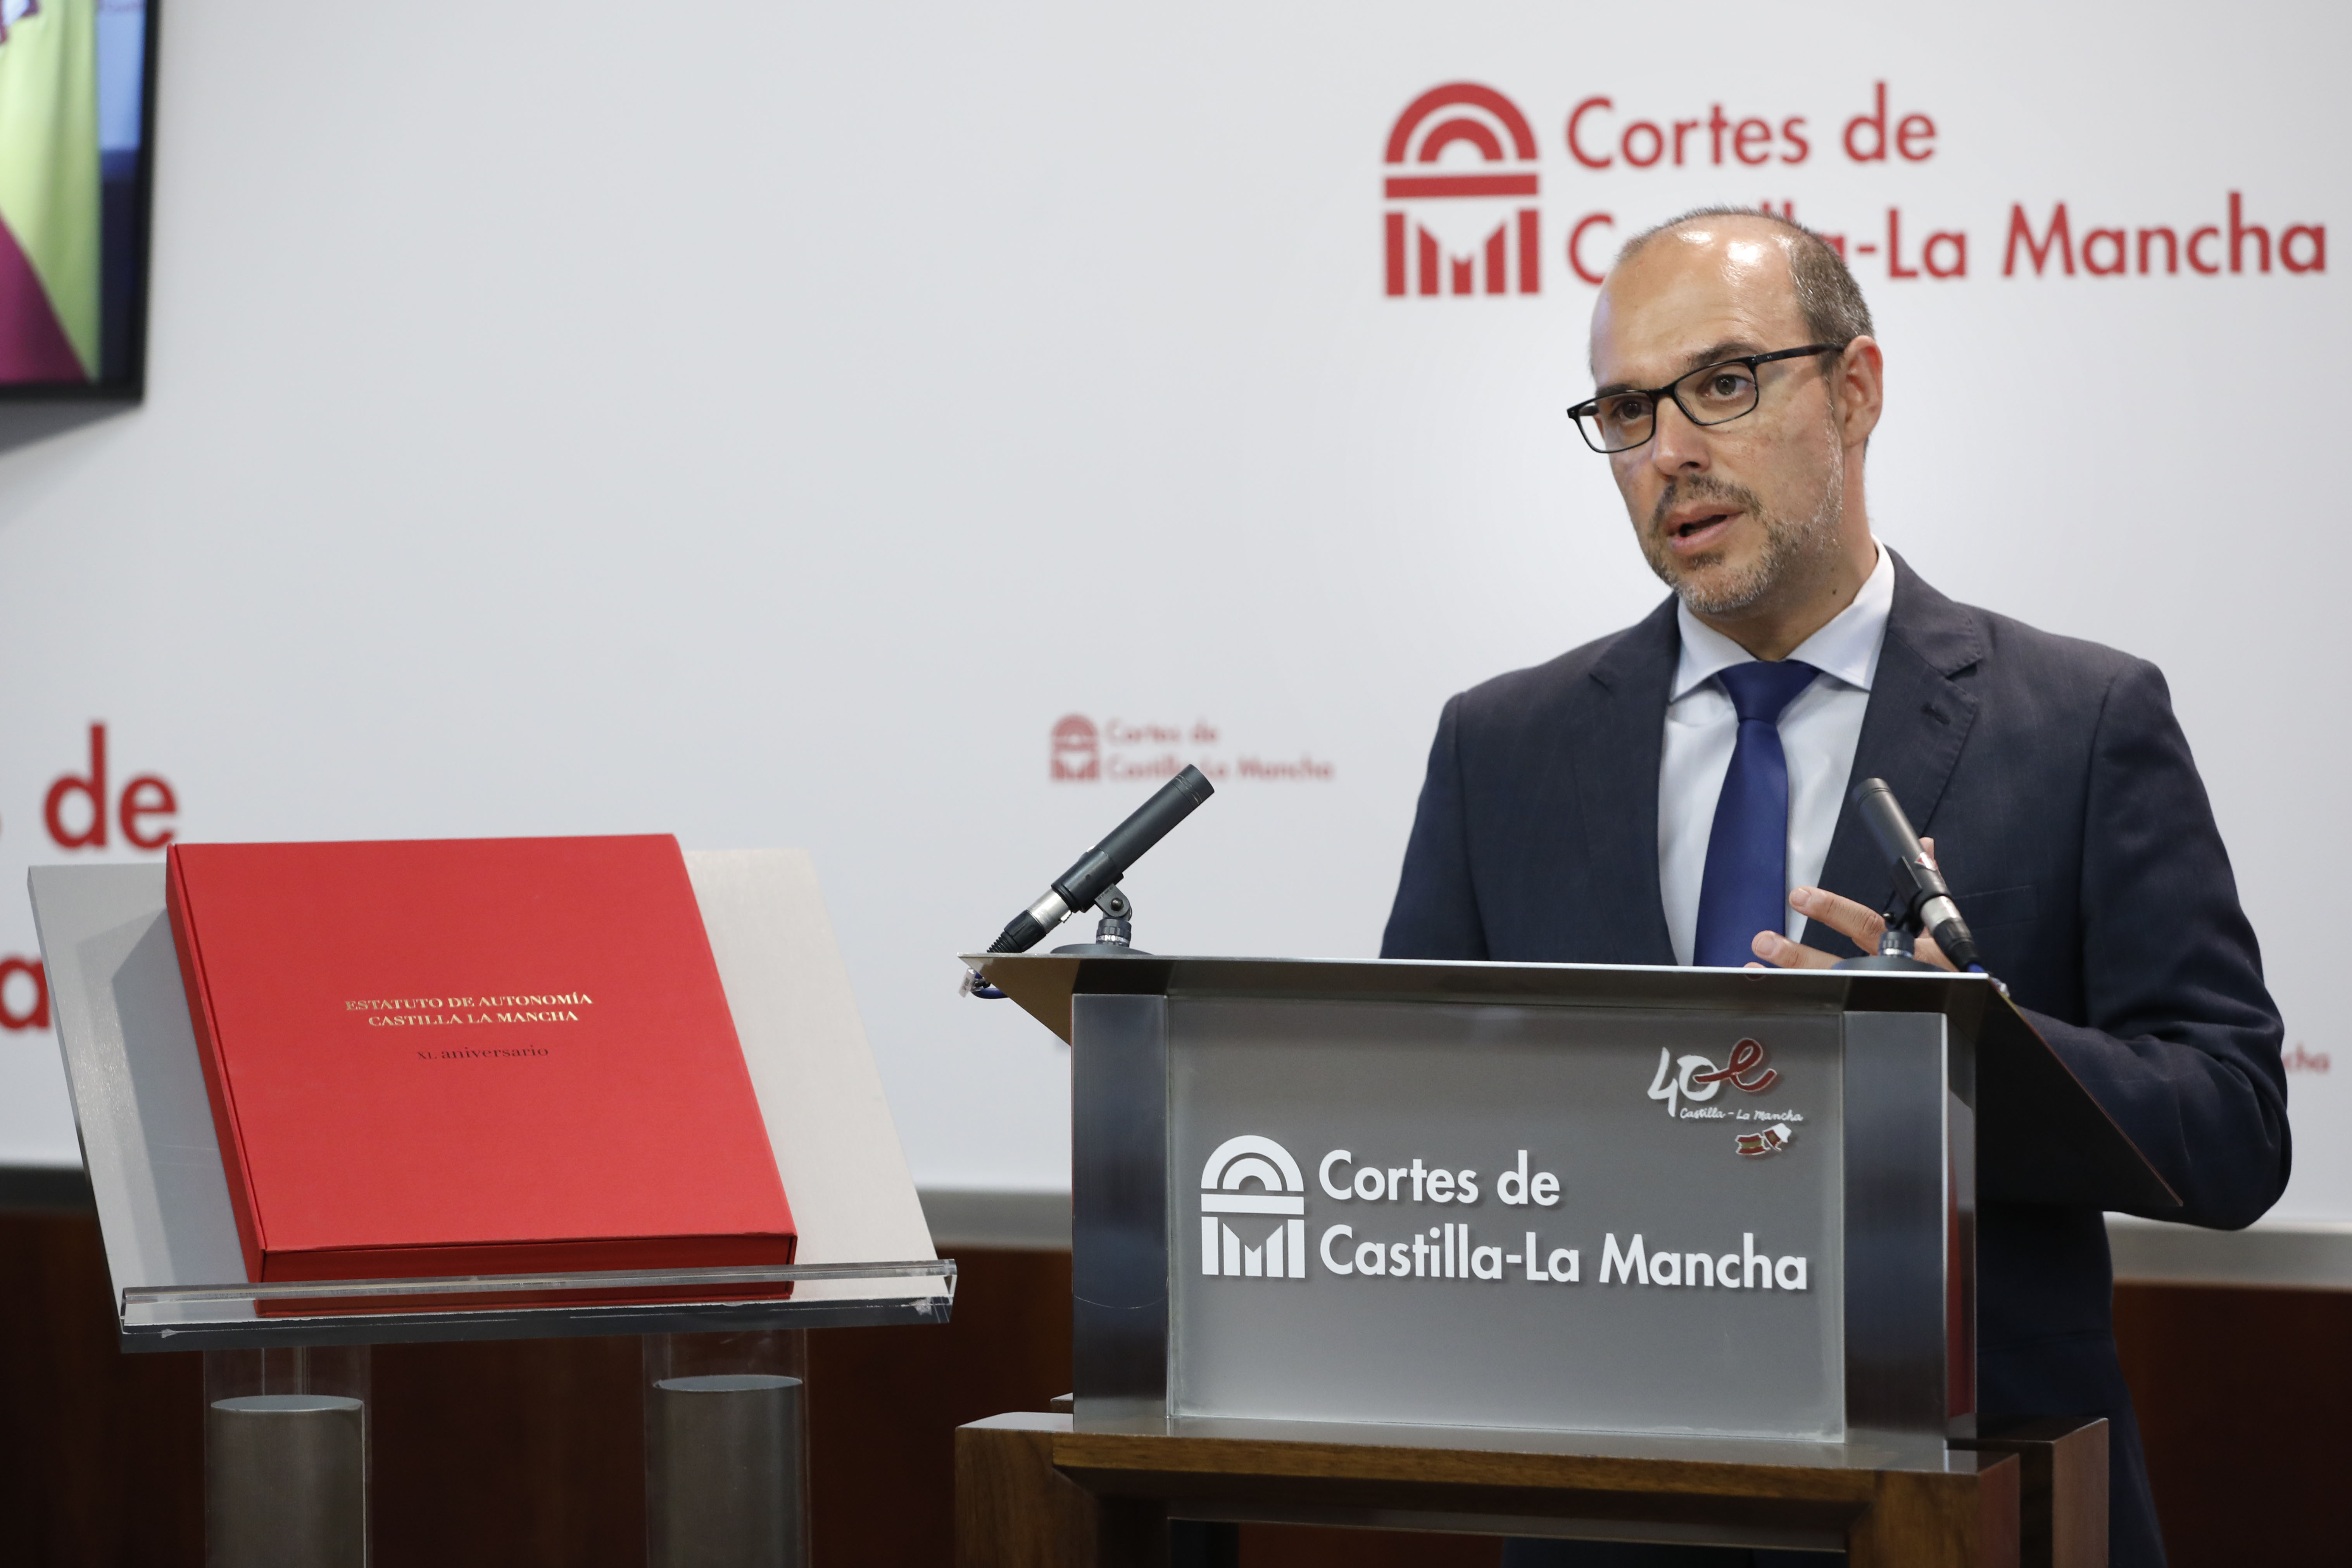 Las Cortes de Castilla-La Mancha editan doce ejemplares conmemorativos del Estatuto, en un “homenaje profundamente simbólico” por su 40 aniversario 